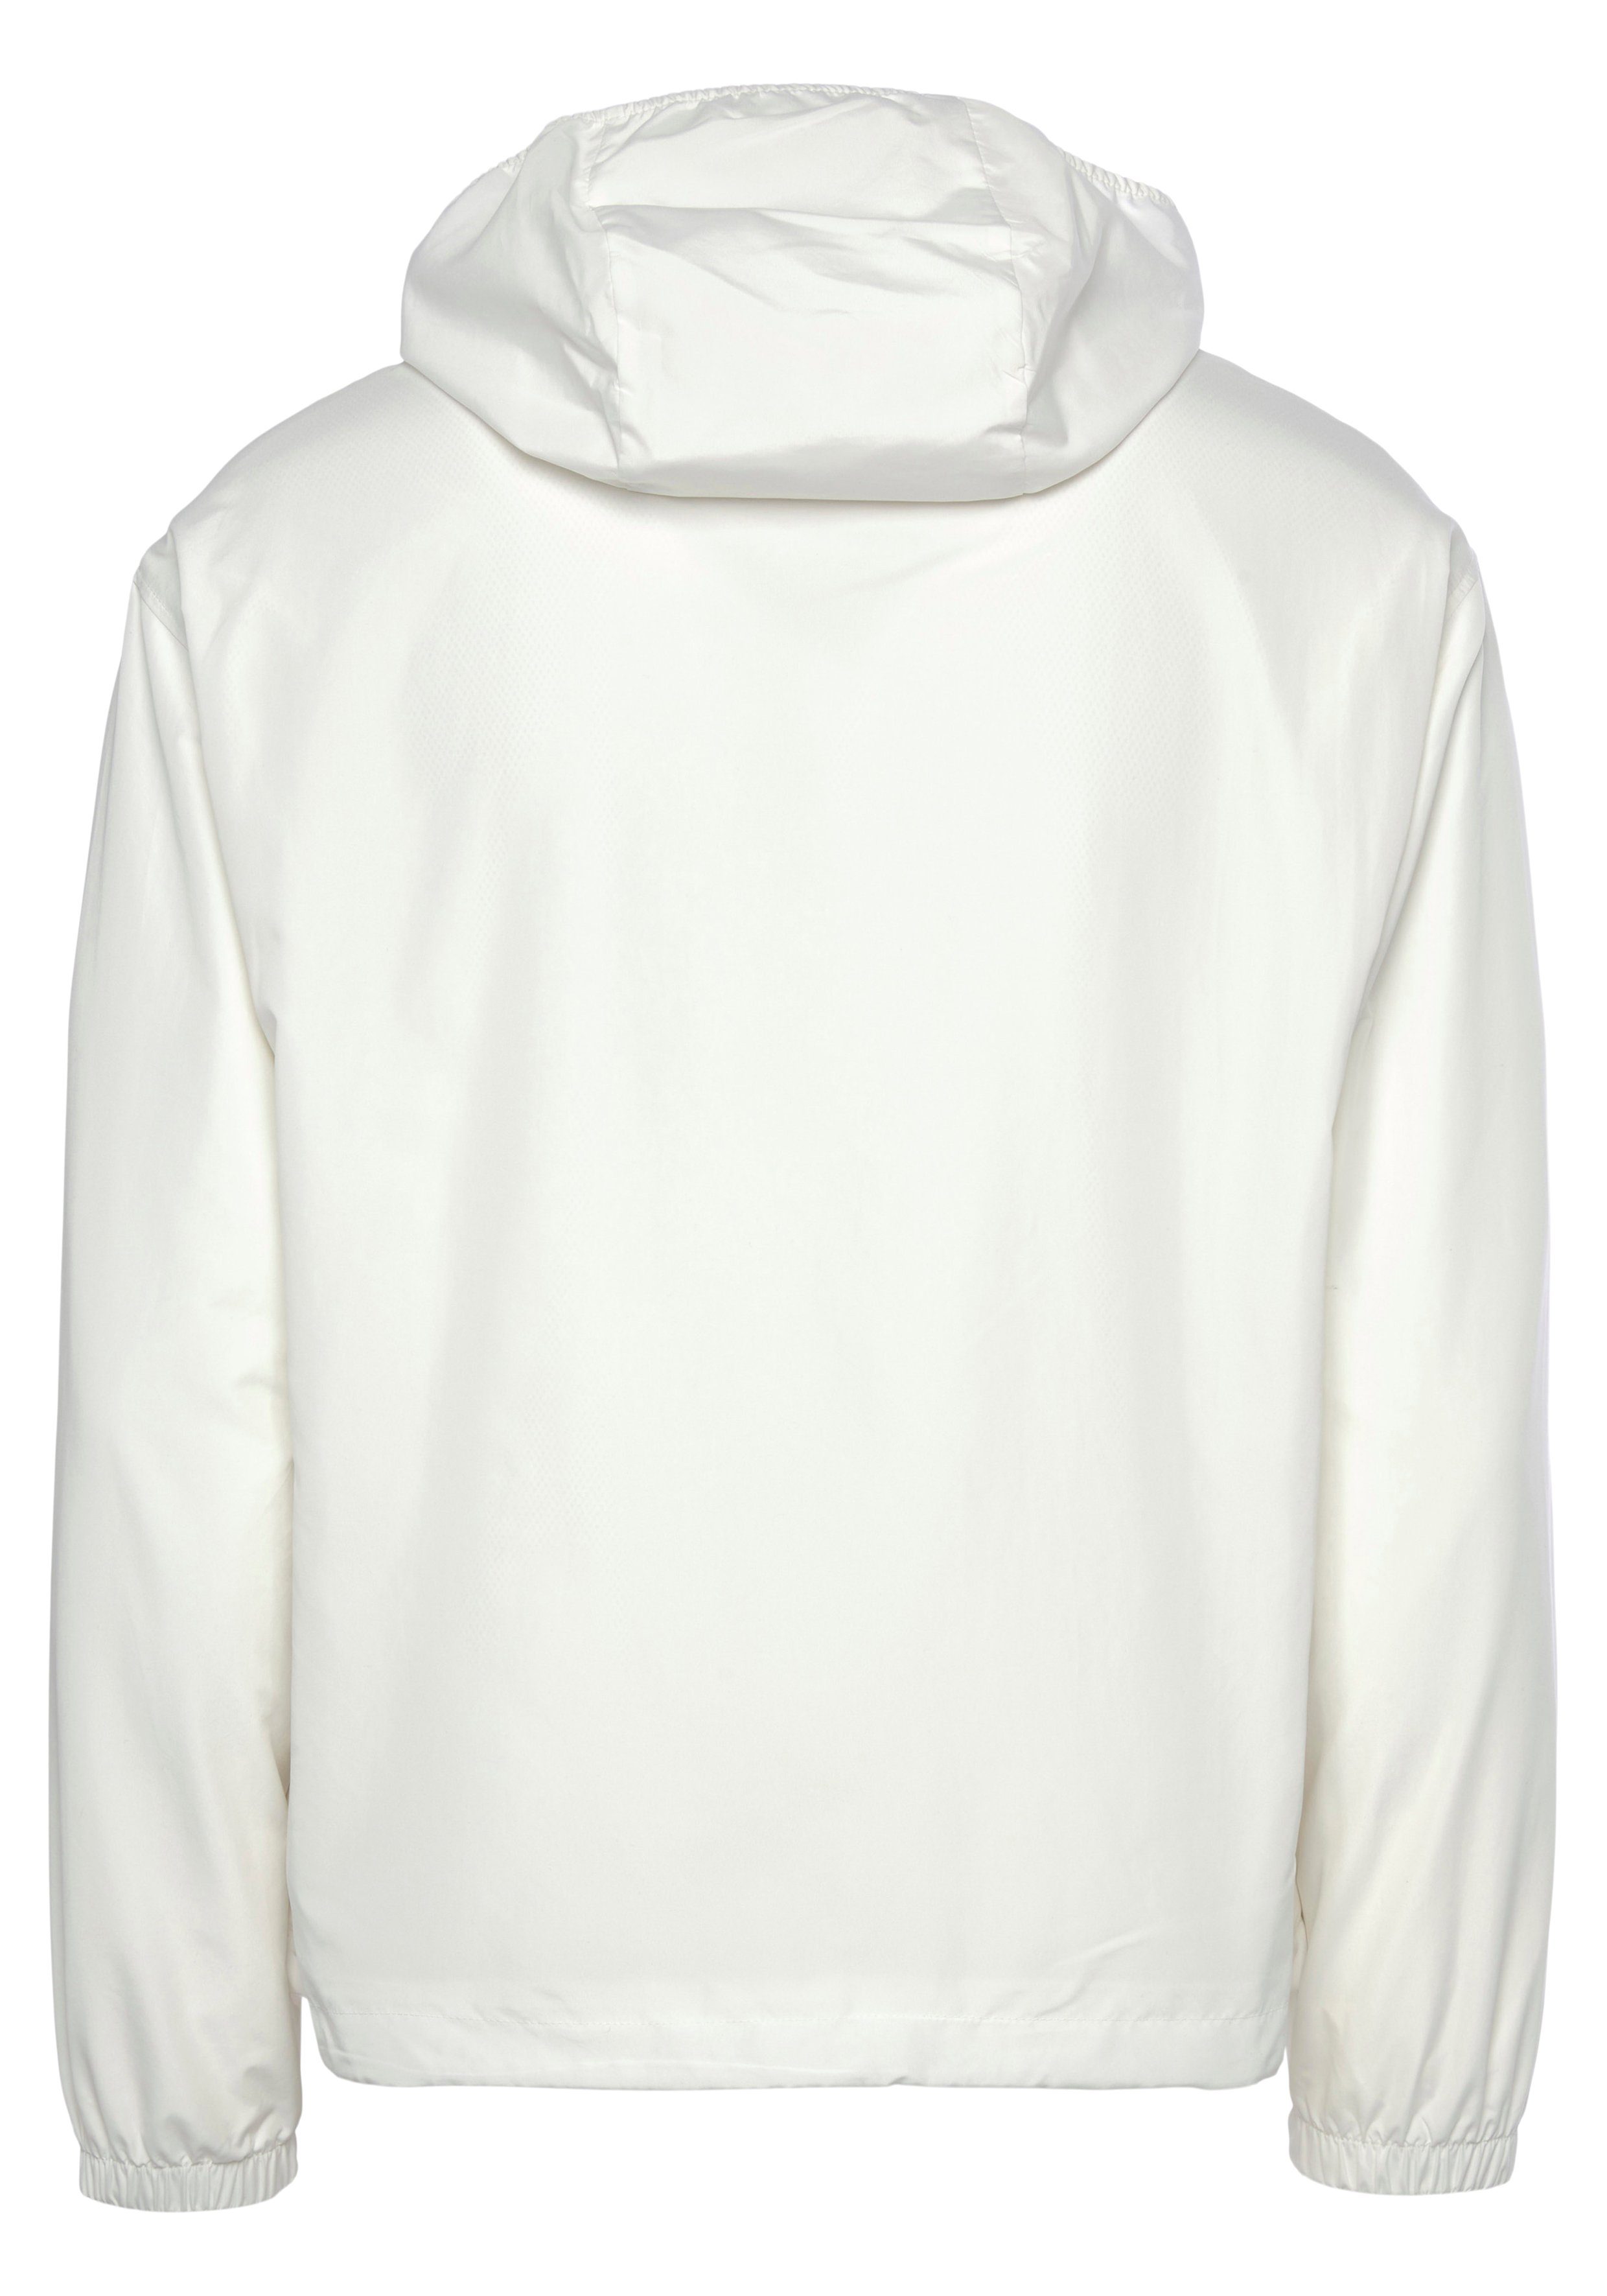 TRAININGSJACKE Trainingsjacke abnehmbarer Jacke Tennis Perfekt für Lacoste weiß Kapuze, wasserabweisende mit